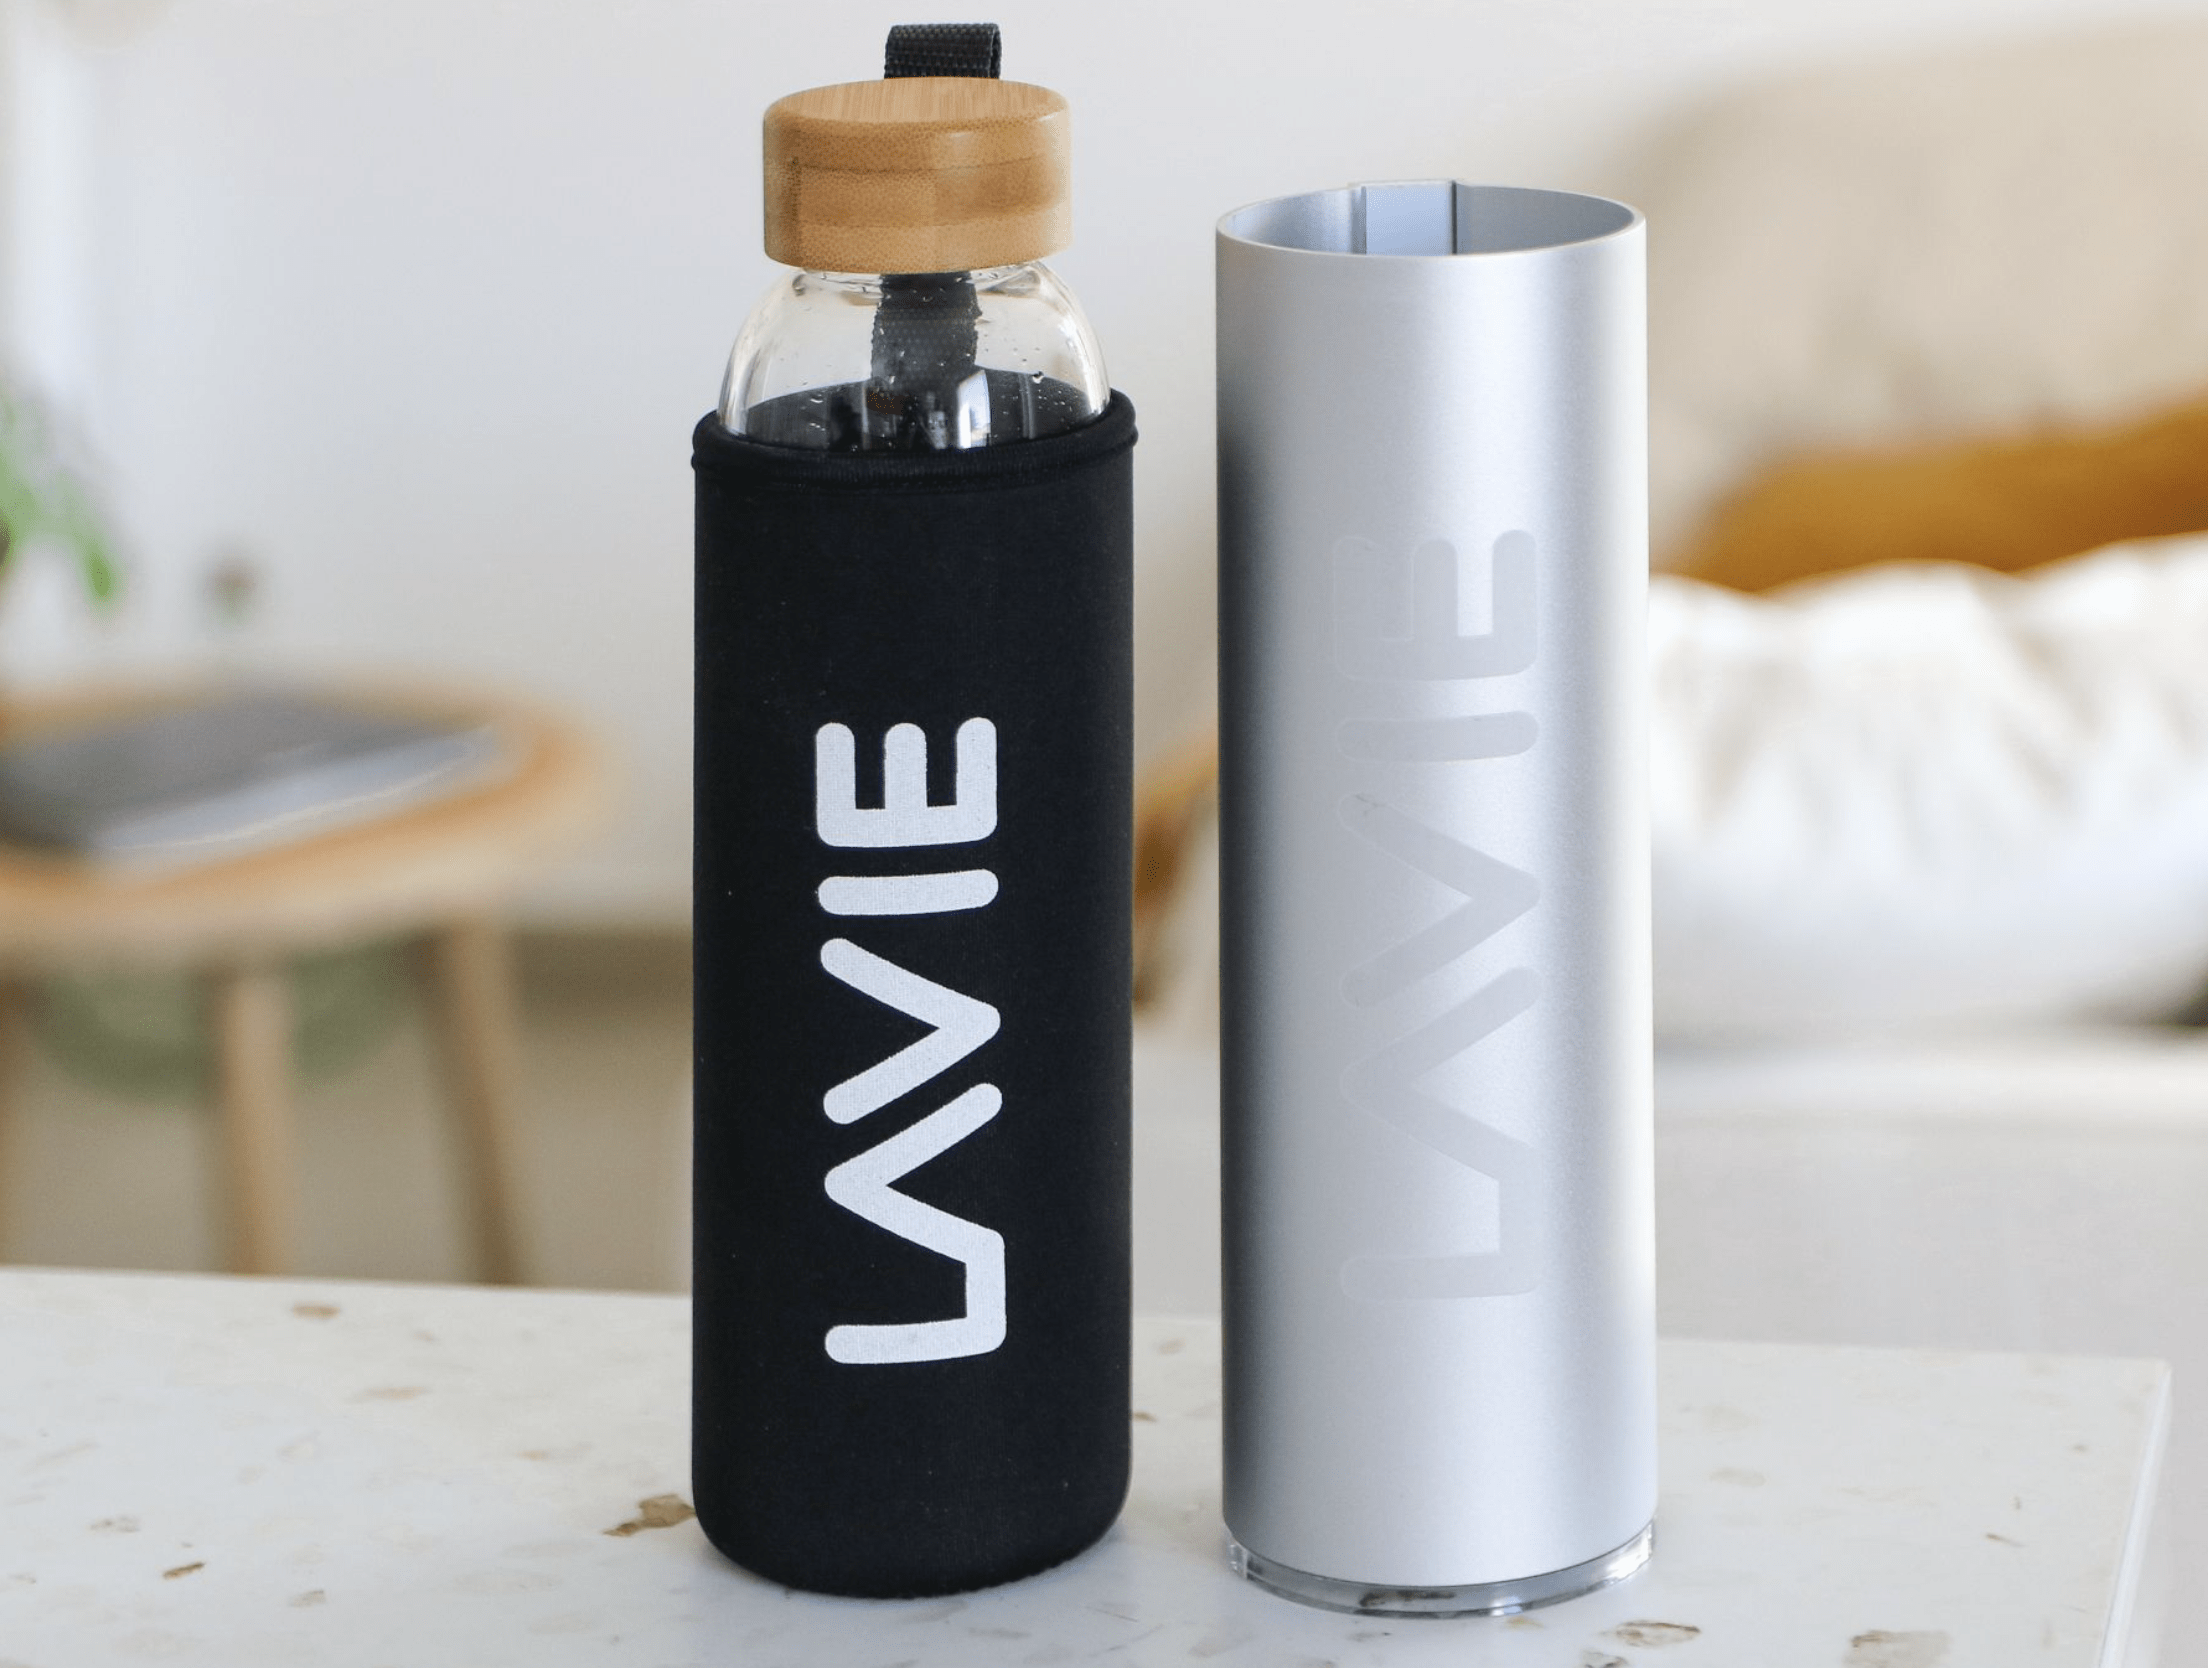 Les purificateurs d'eau UV-A LaVie – THE RIGHT NUMBER MAGAZINE